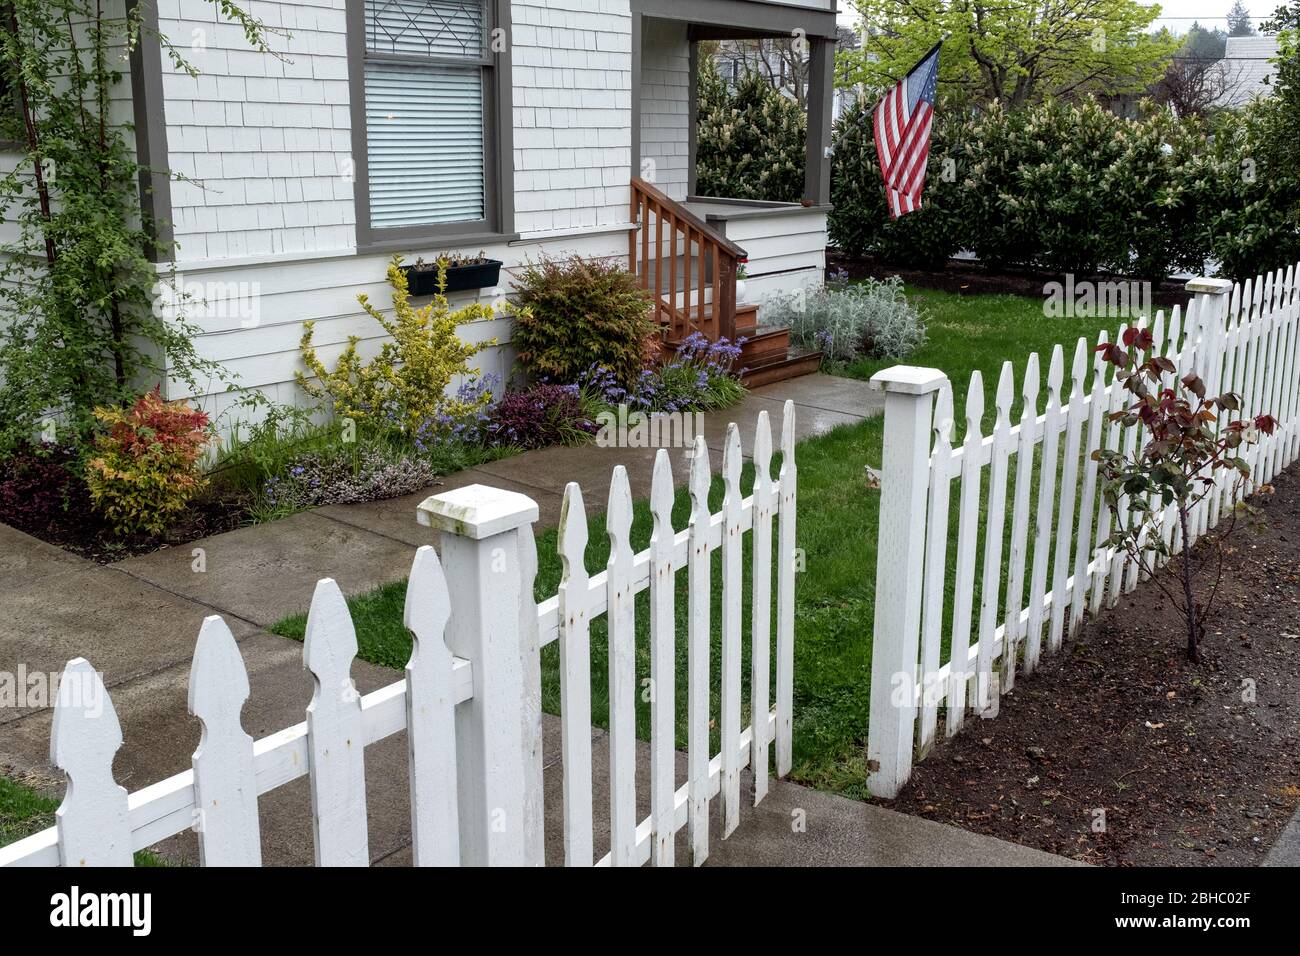 WA17462-00-BW .... WASHINGTON - Maison avec clôture de piquetage et drapeau américain. Banque D'Images